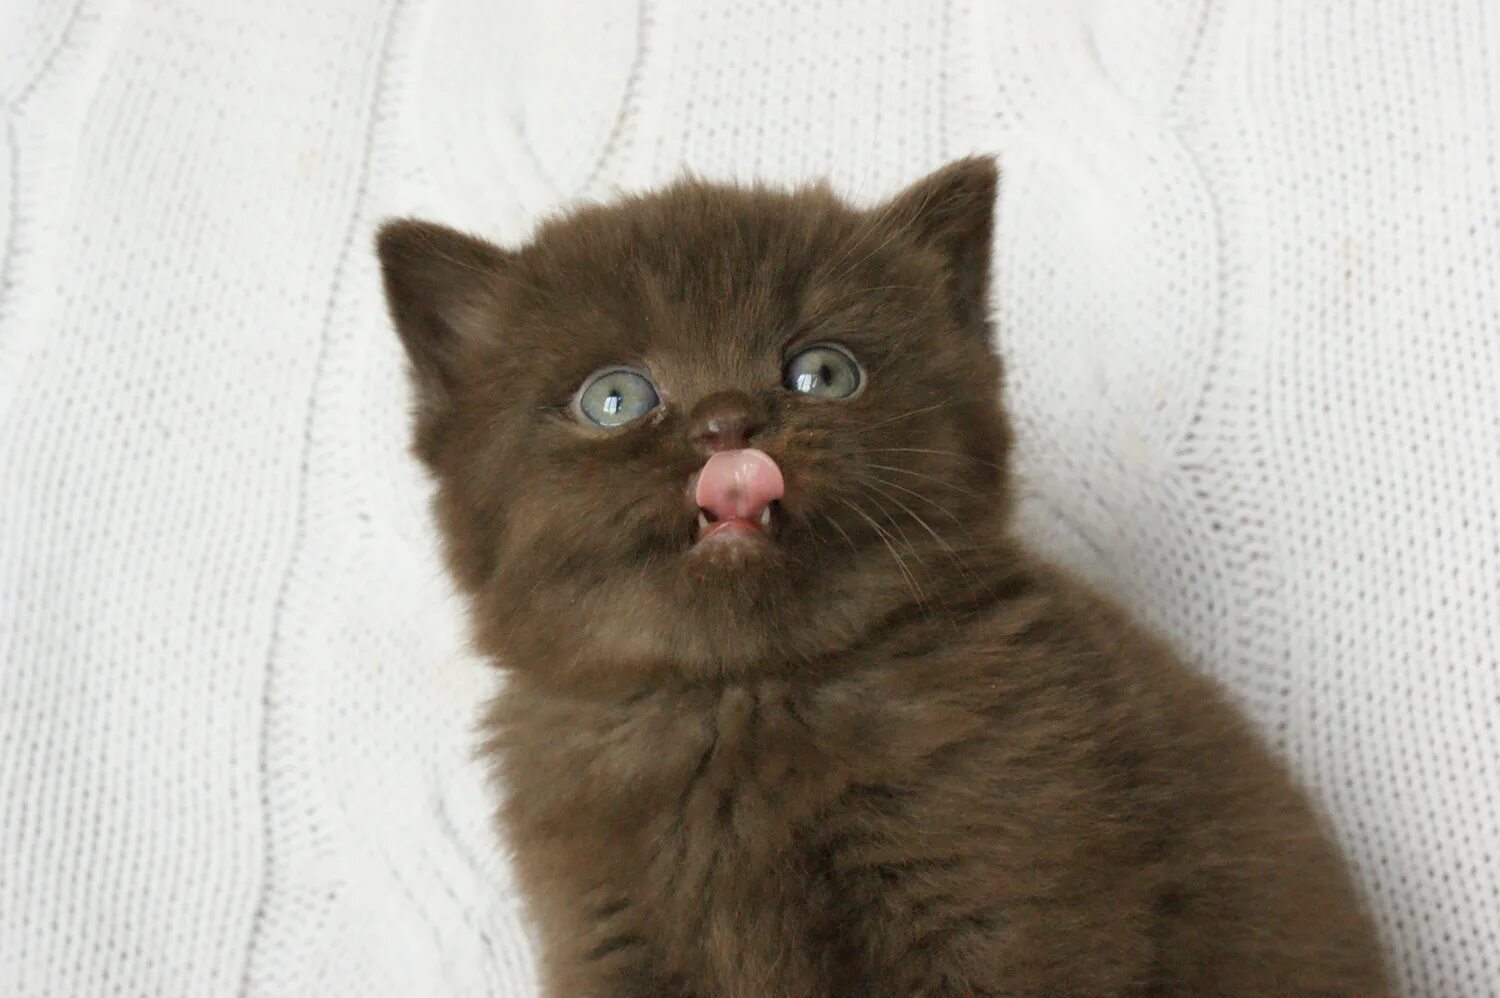 Котята шоколадного окраса с фруктами. Фото кошечки шоколадного цвета с белым носиком. От персидской кошки с шоколадной окраской